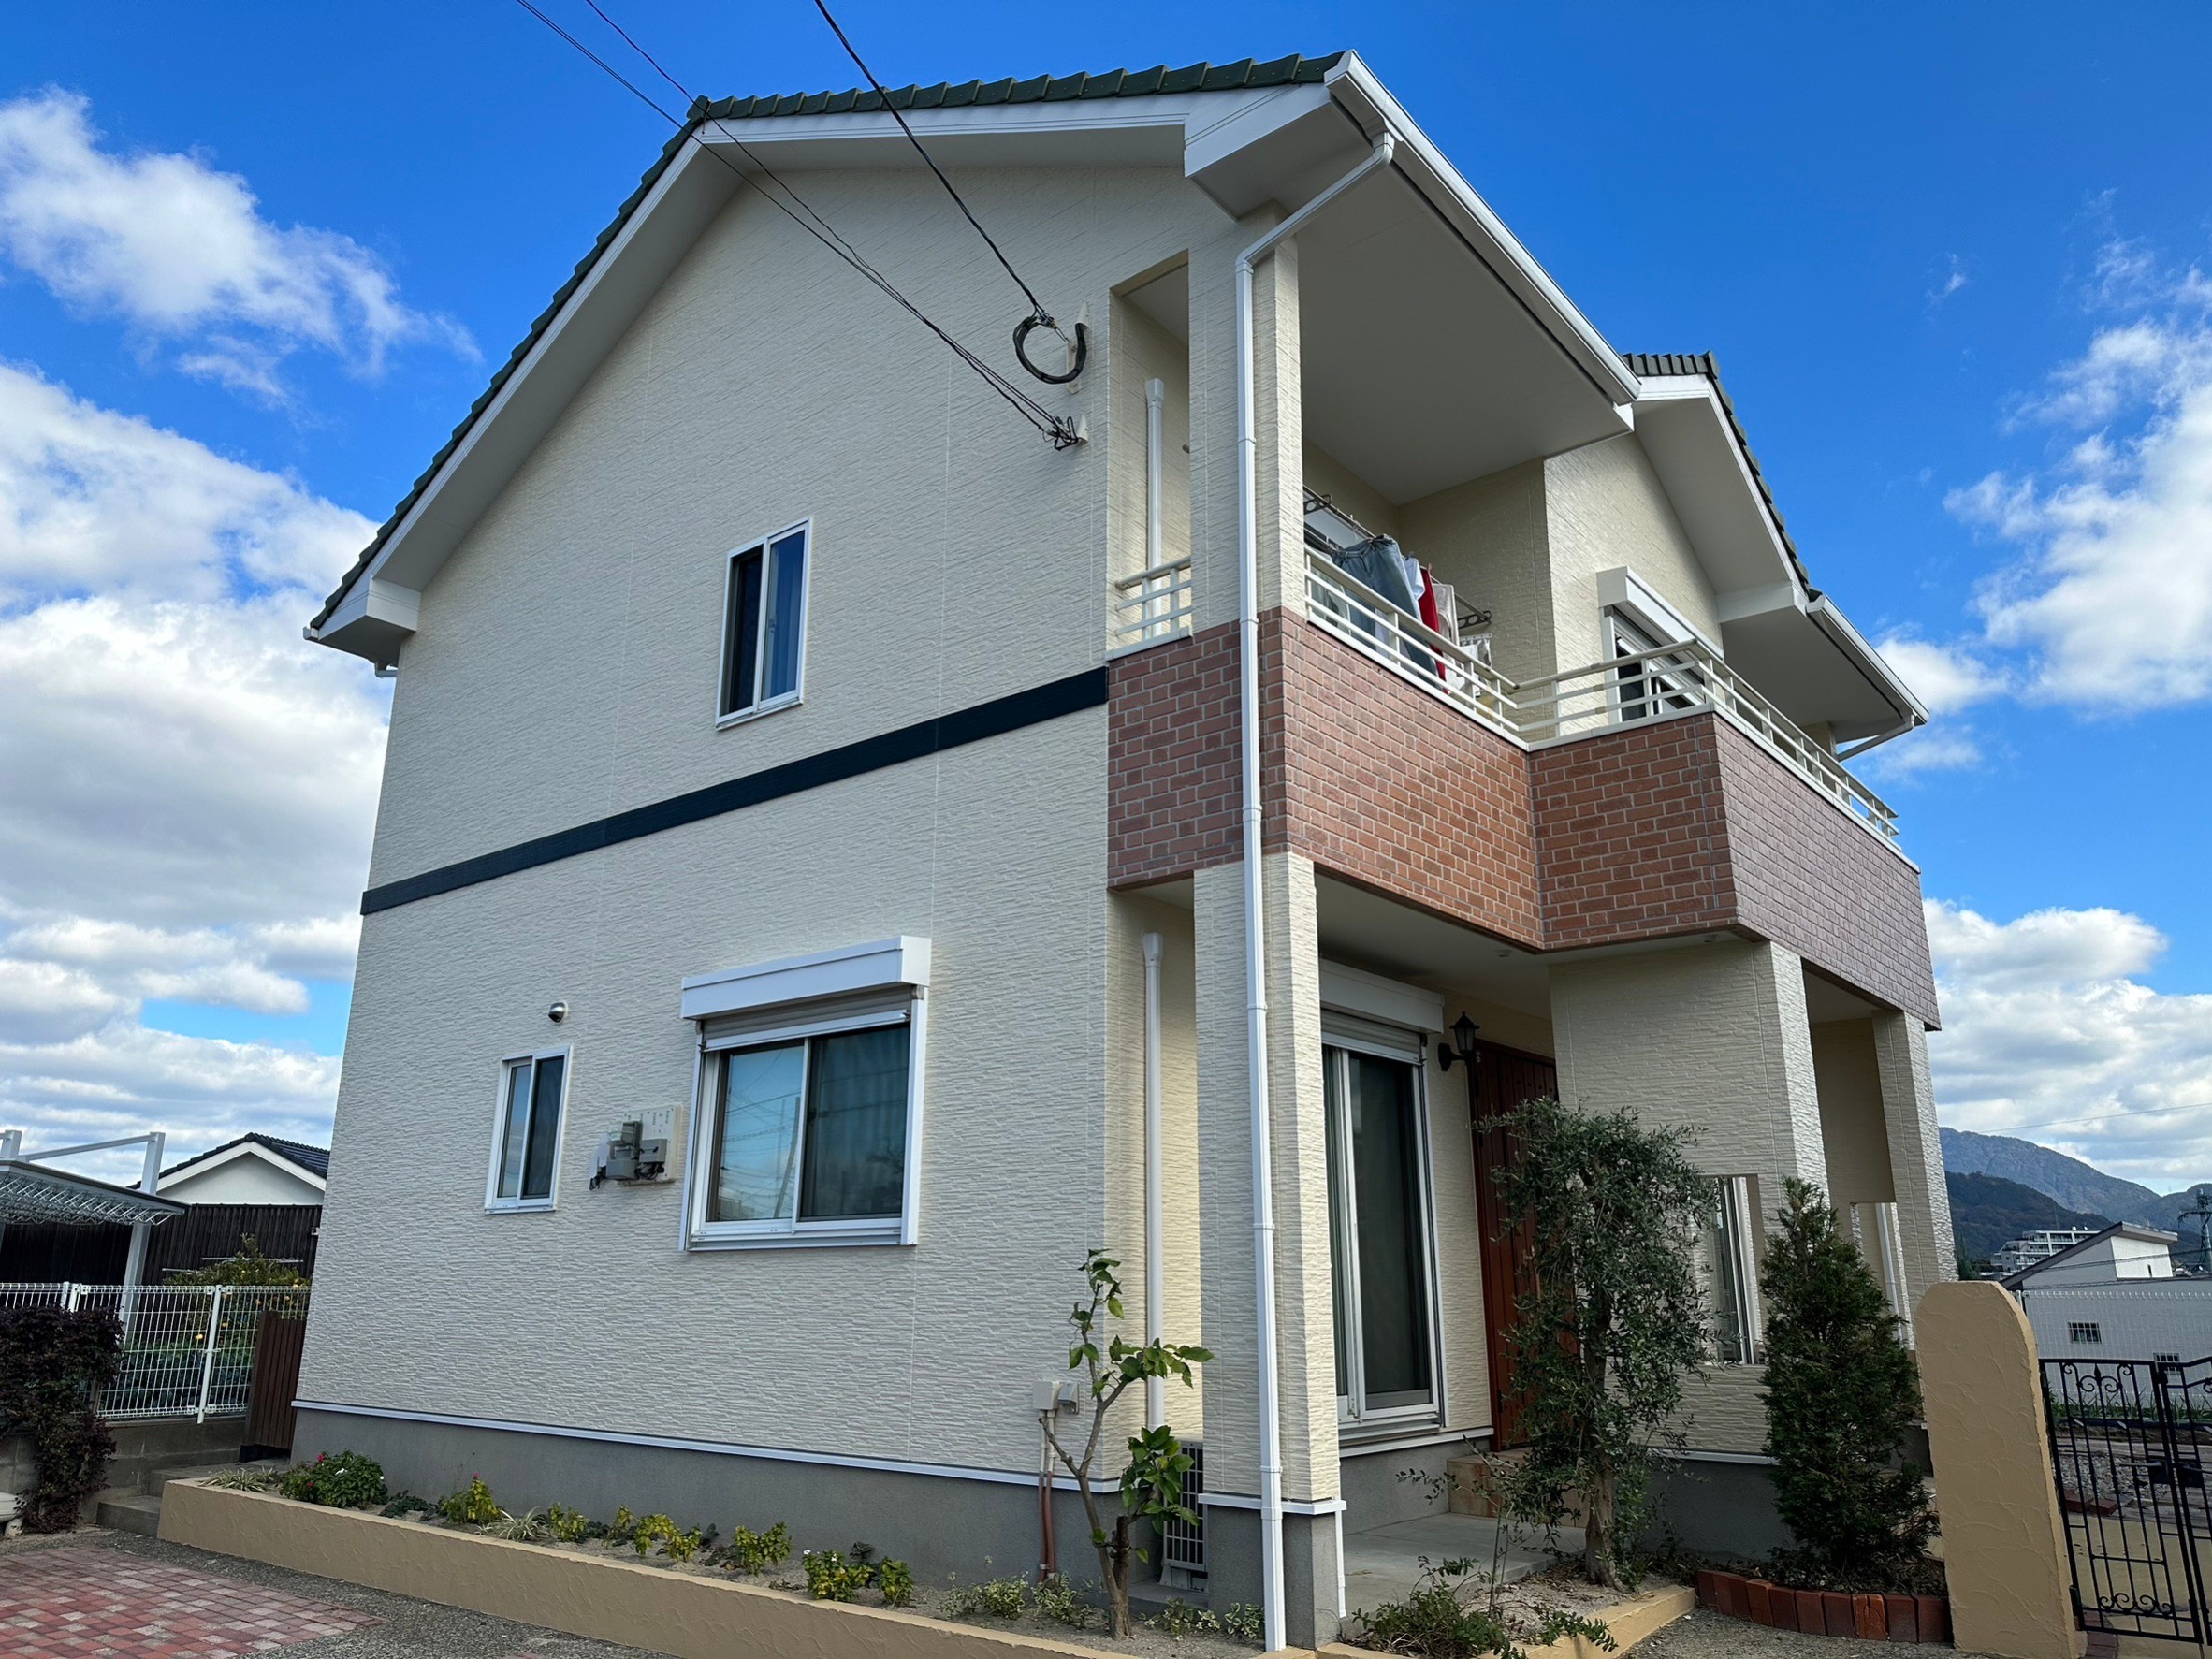 福岡県大野城市上大利のI様邸でプレマテックス社の最高品質塗料タテイルαを屋根外壁共に使用し、いつまでもきれいな外壁を実現させました。12/2完成です。【ホームページより】